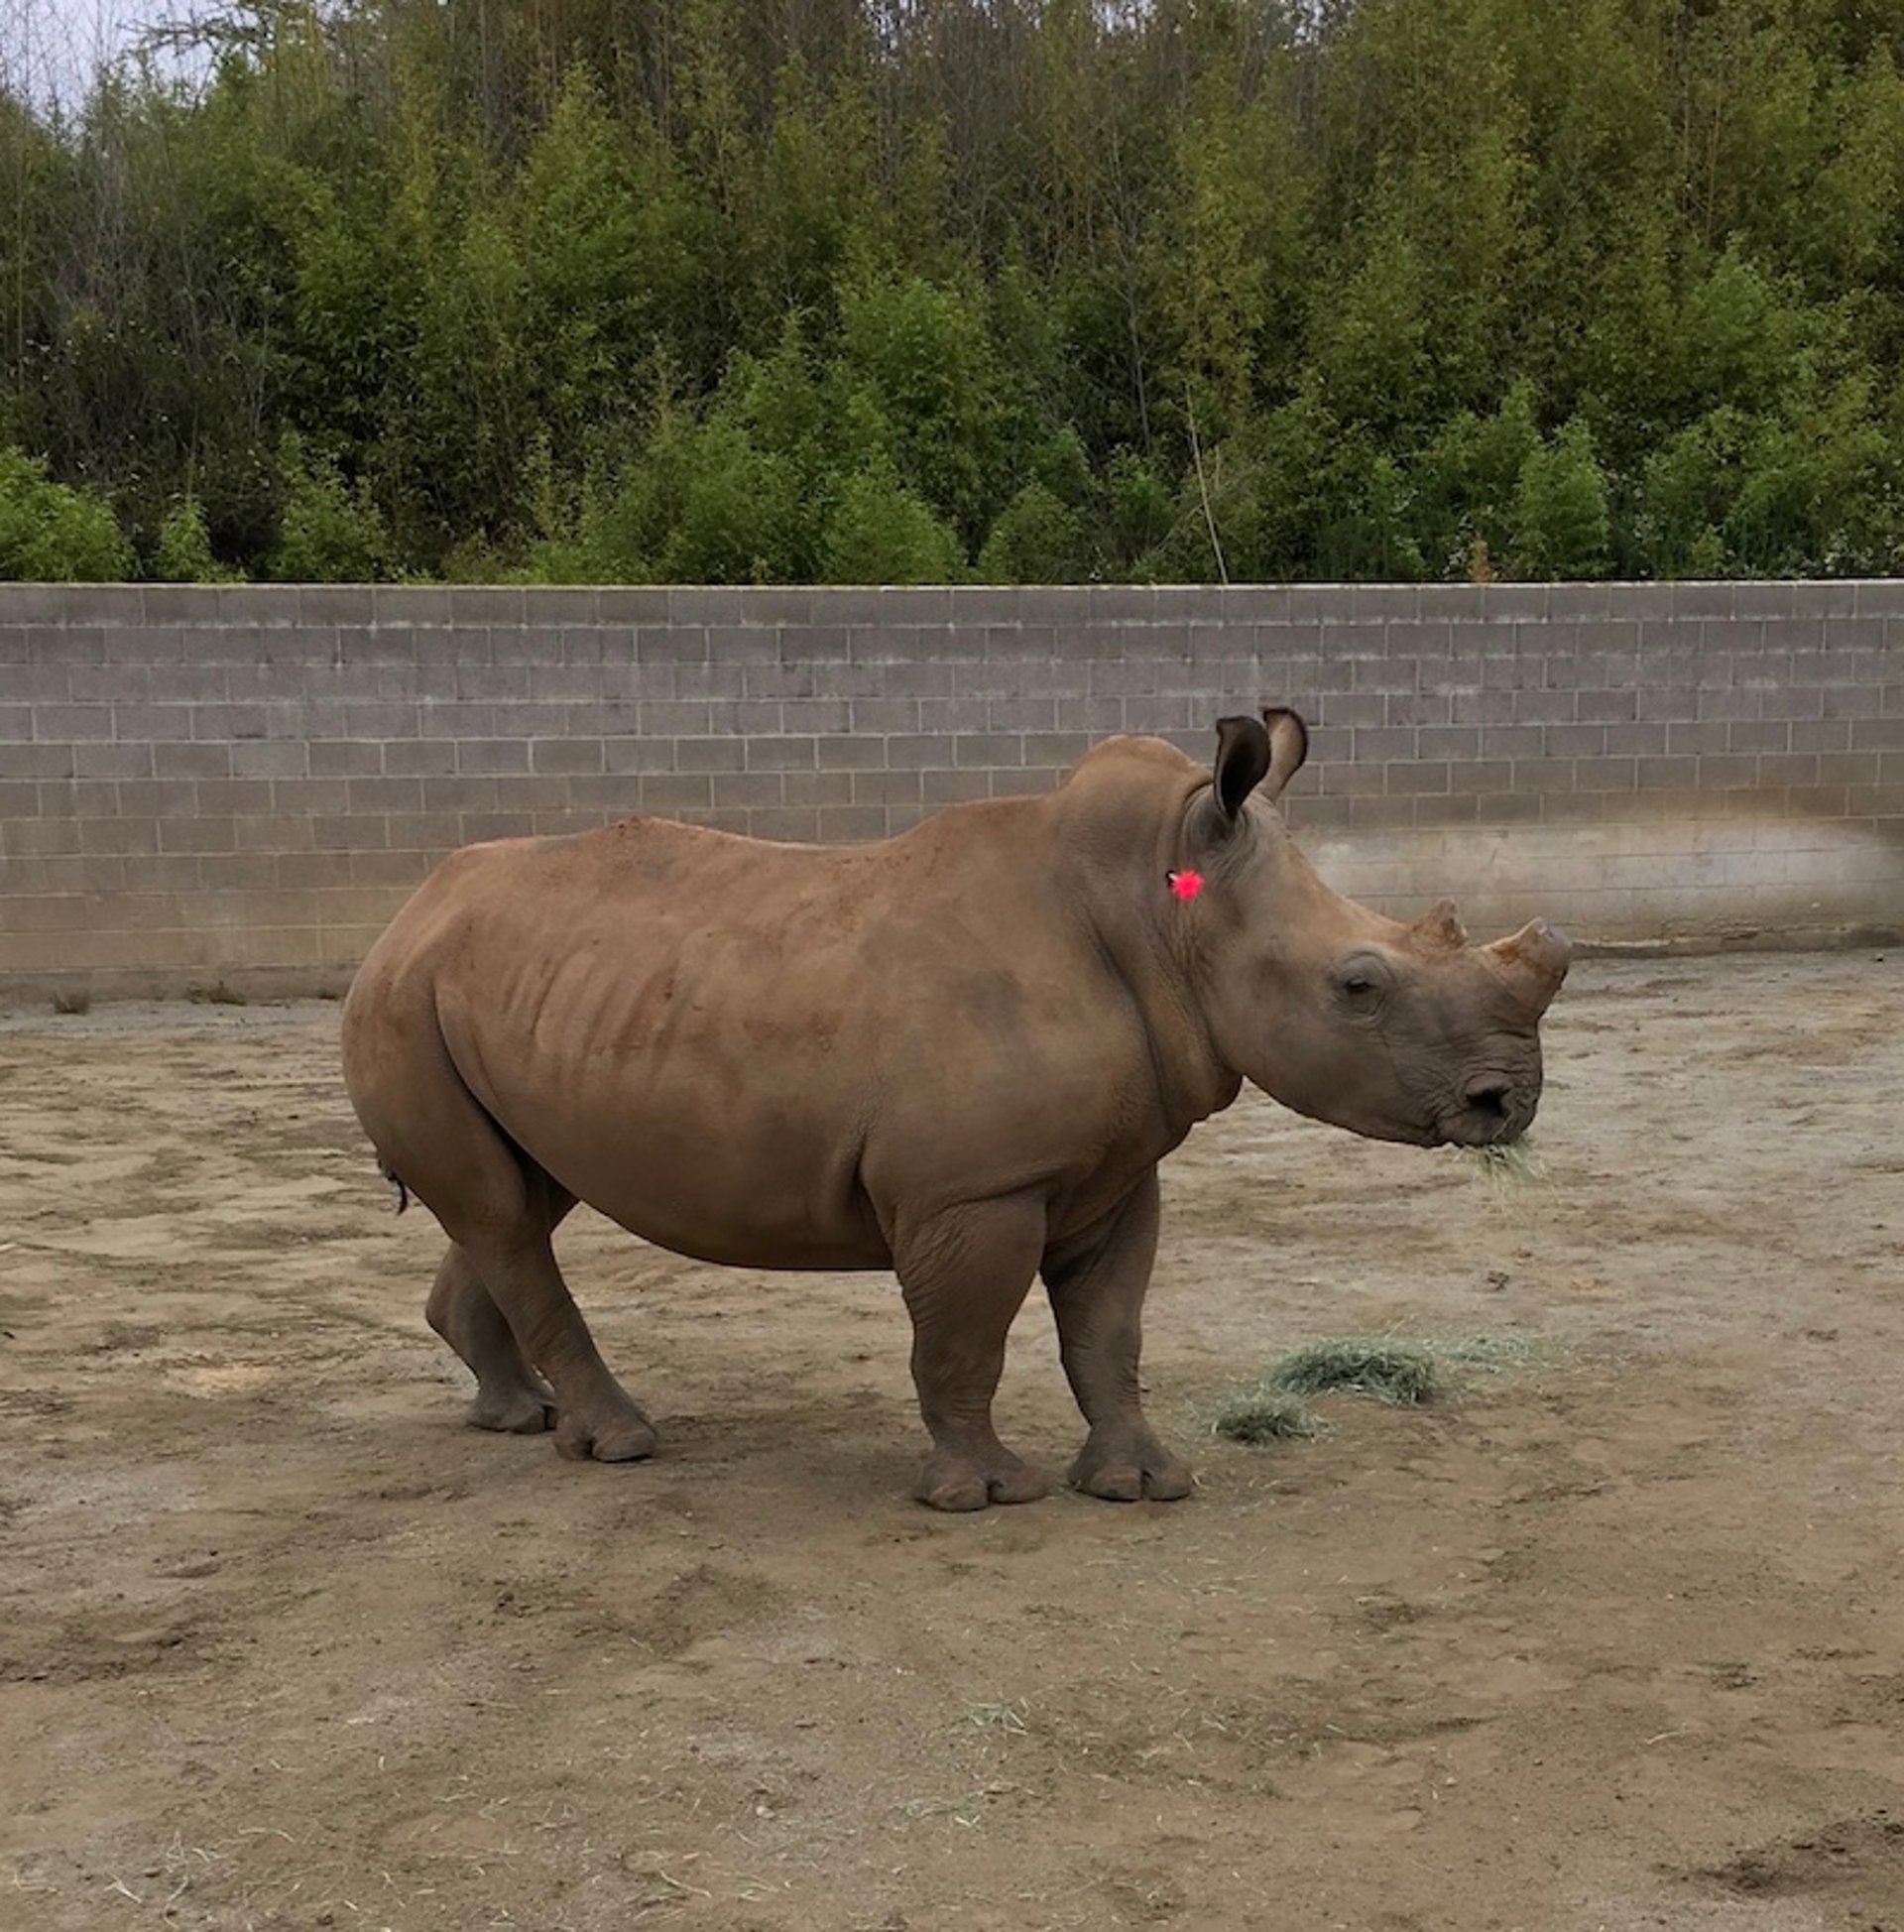 Remote delivery of medication via dart, rhinoceros